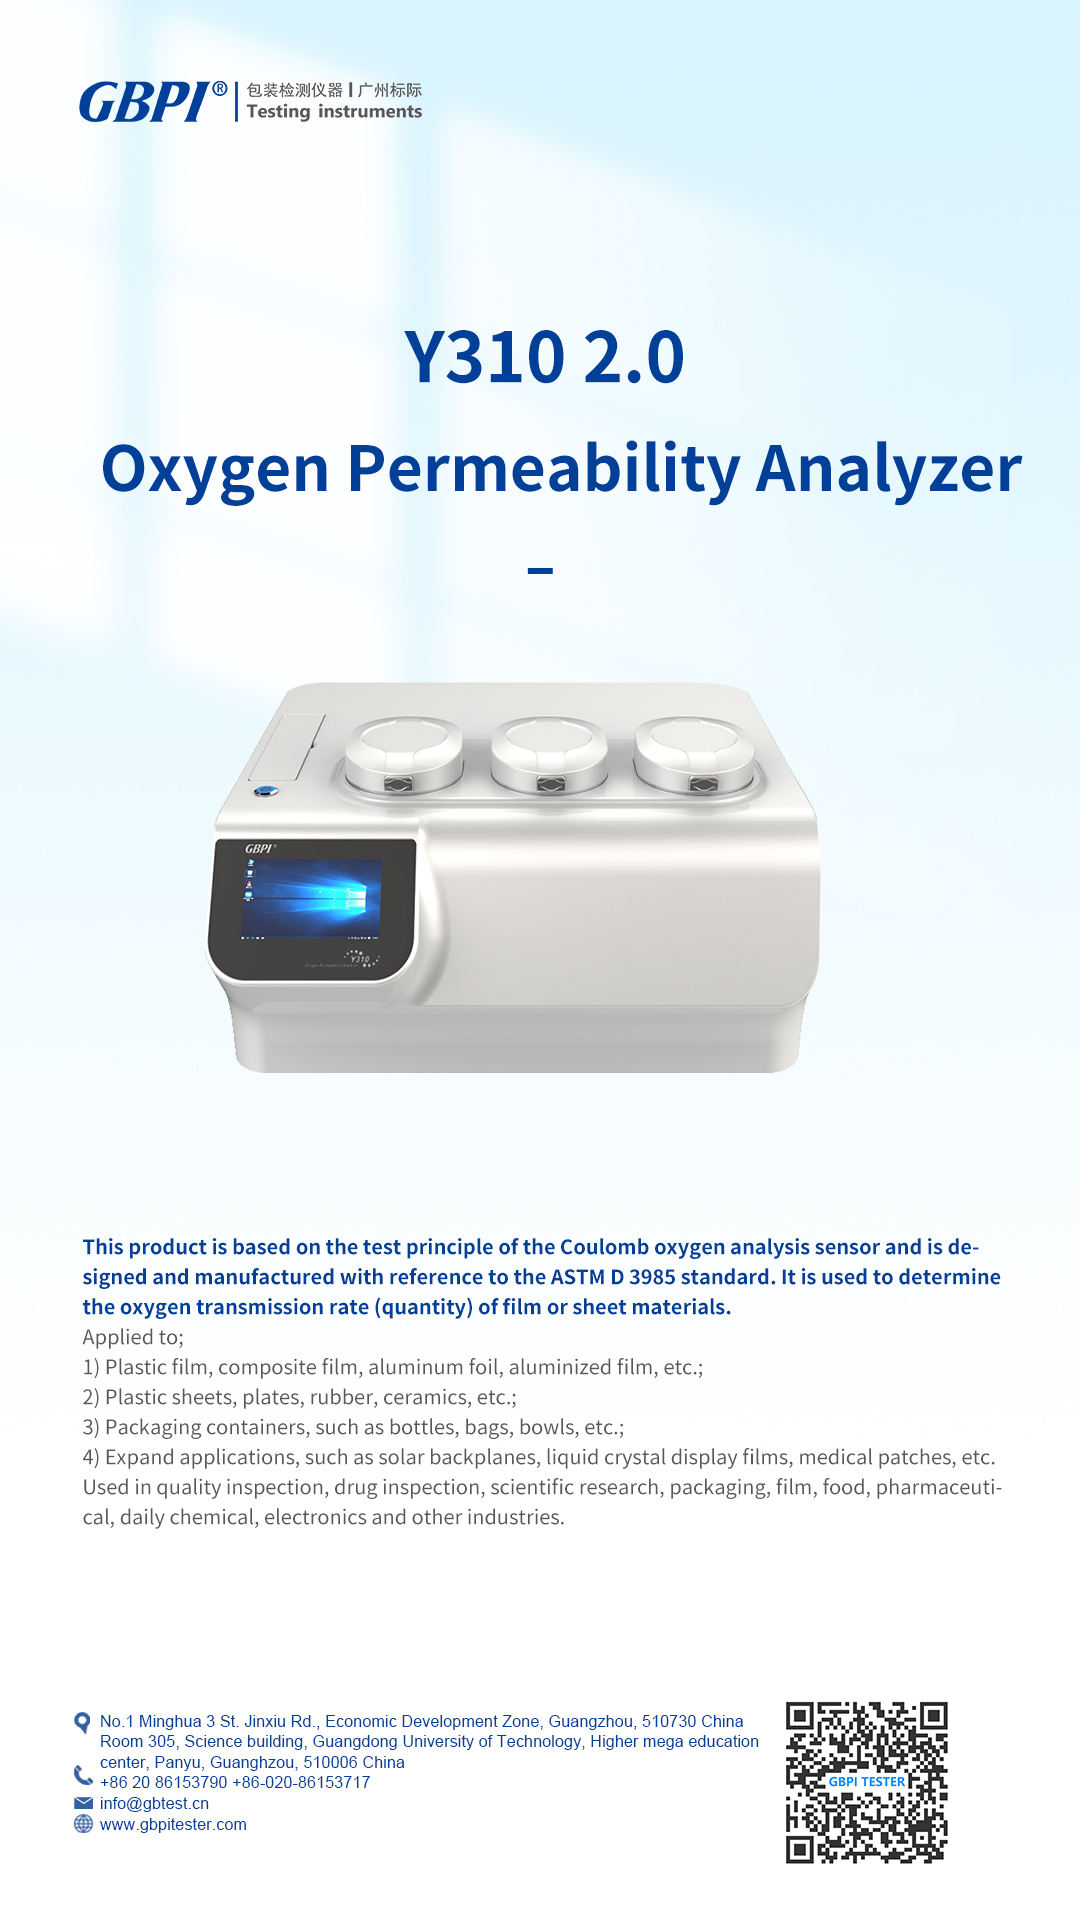 Oxygen Permeability Analyzer